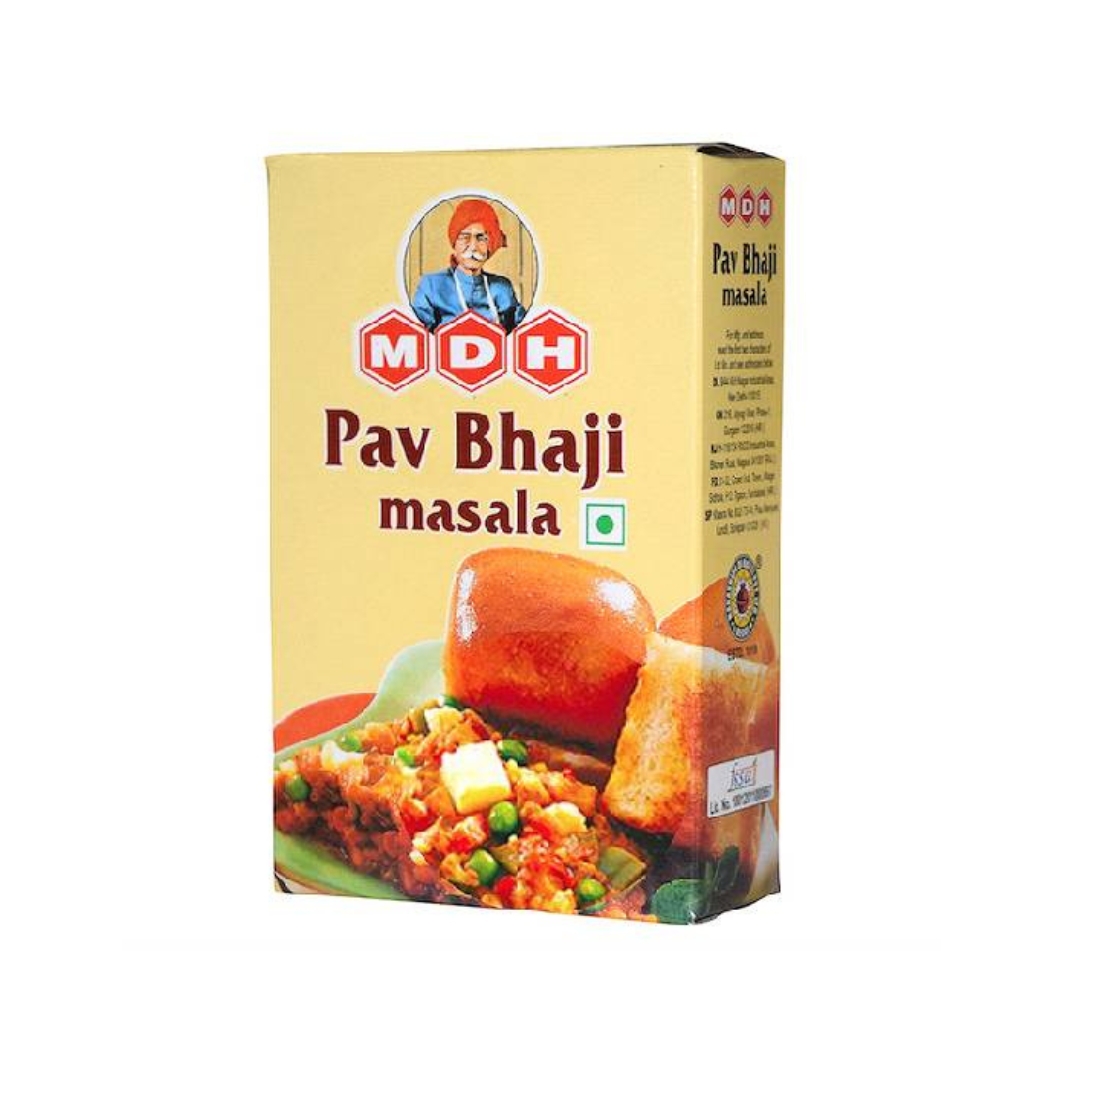 パオパジマサラ MDH PAV BHAJI MASALA 無添加(Additive-free) インド料理素材